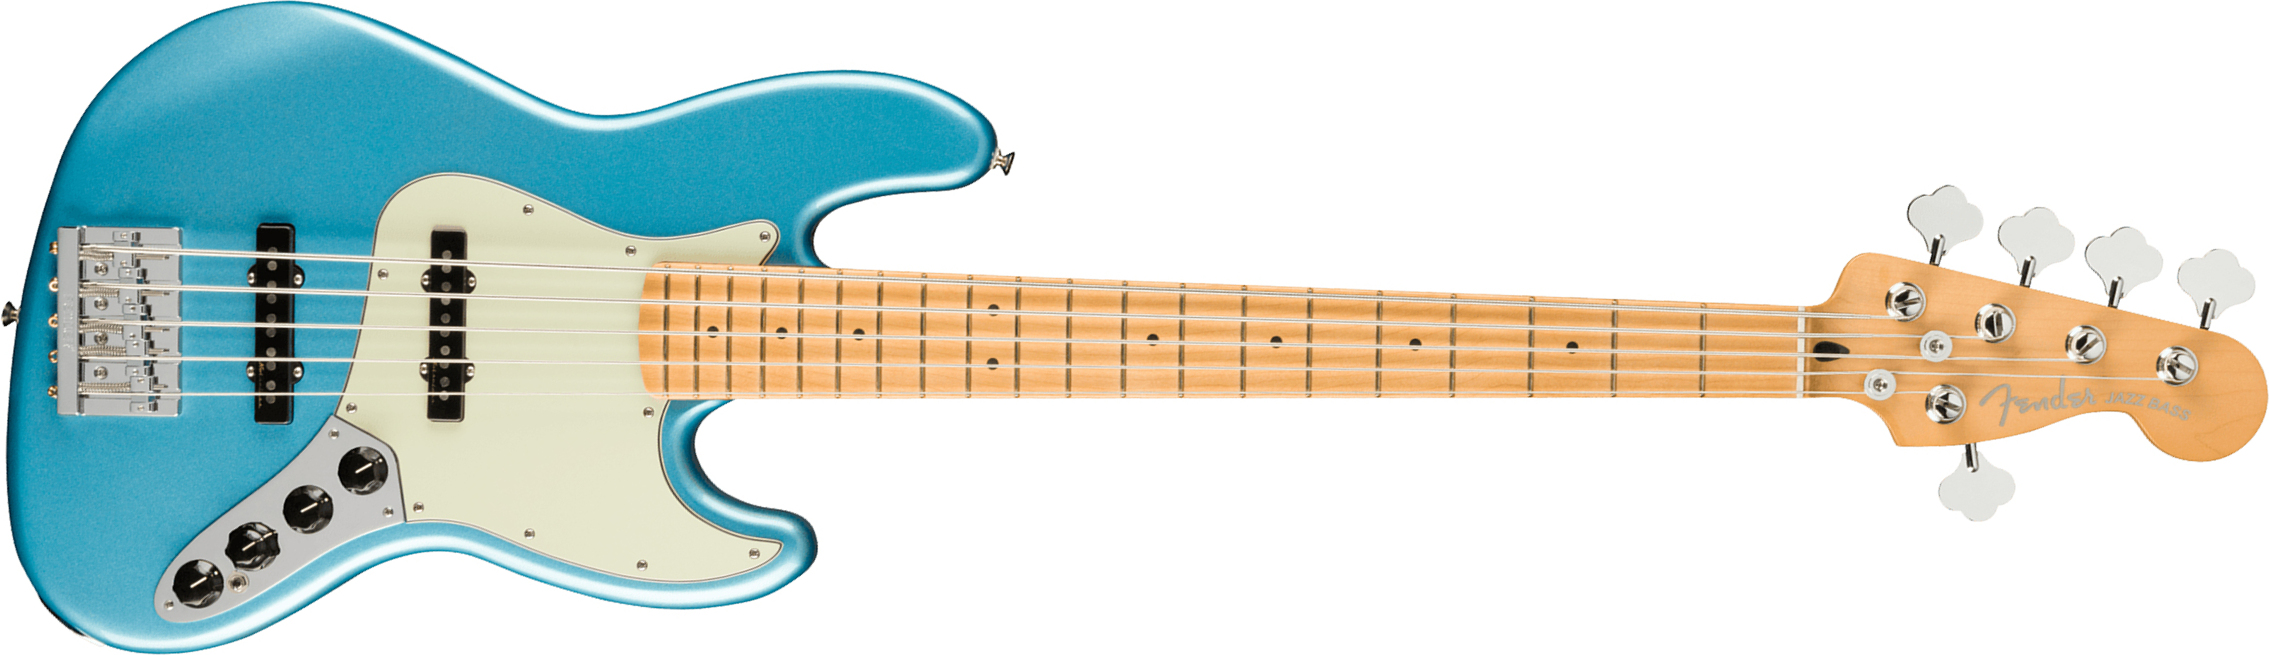 Fender Jazz Bass Player Plus V Mex 5c Active Mn - Opal Spark - Bajo eléctrico de cuerpo sólido - Main picture